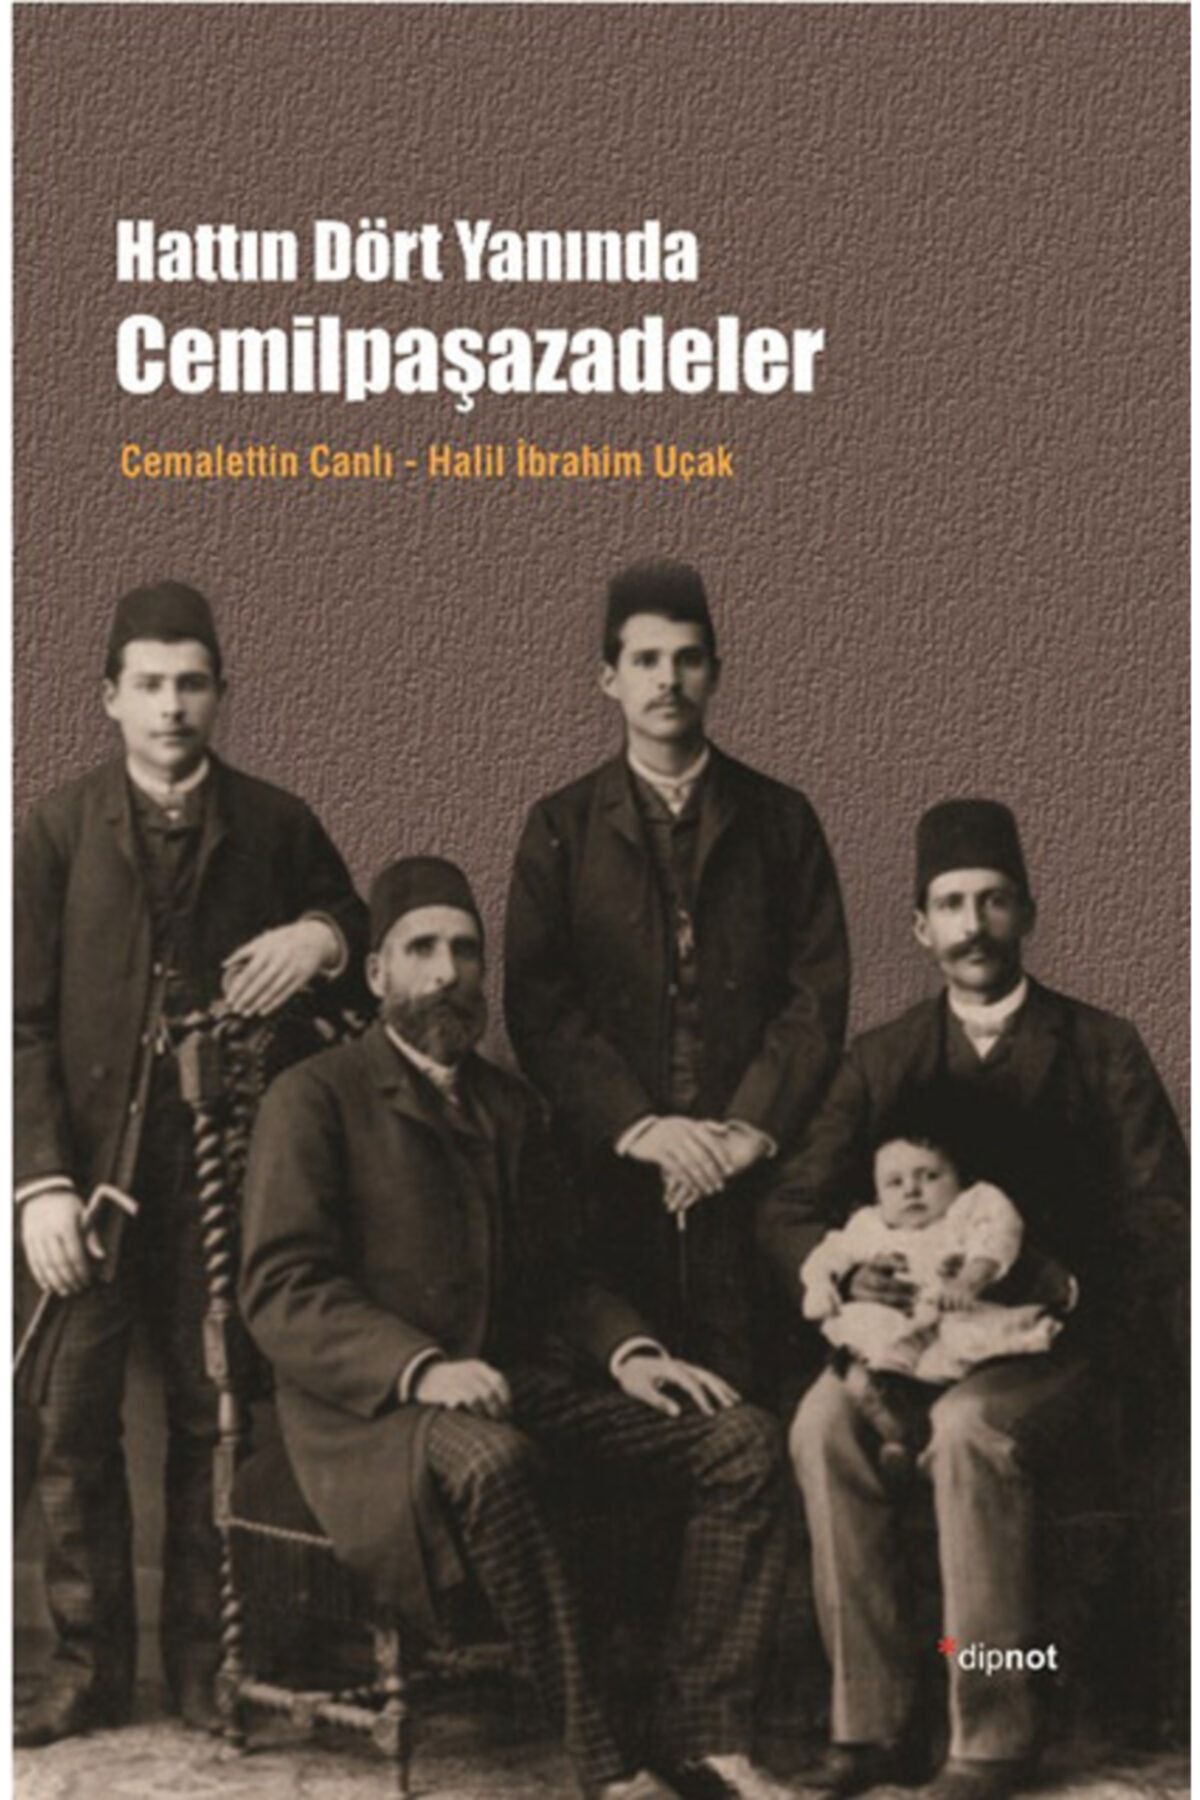 Dipnot Yayınları Hattın Dört Yanında Cemilpaşazadeler - - Cemalettin Canlı, Halil Ibrahim Uçak Kitab